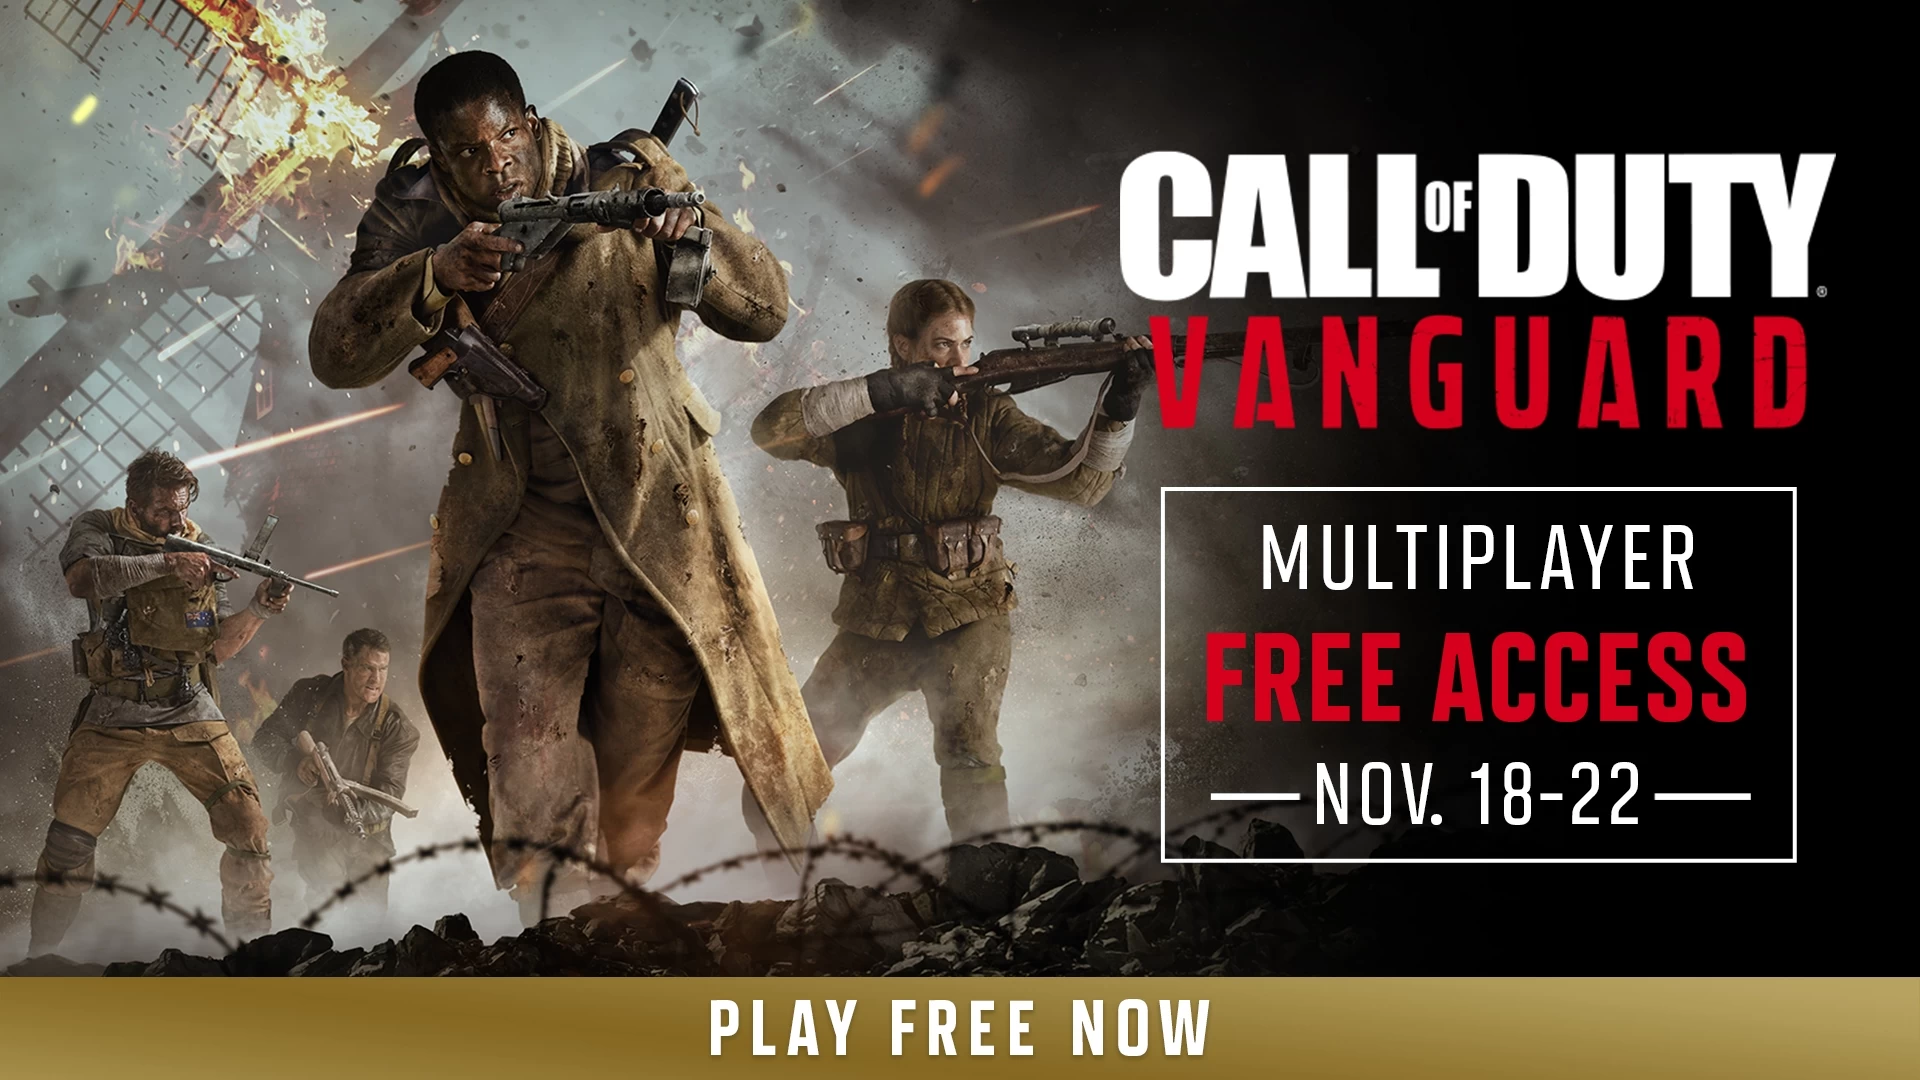 Todo el mundo puede jugar gratis a Call of Duty: Vanguard hasta el 22 de noviembre